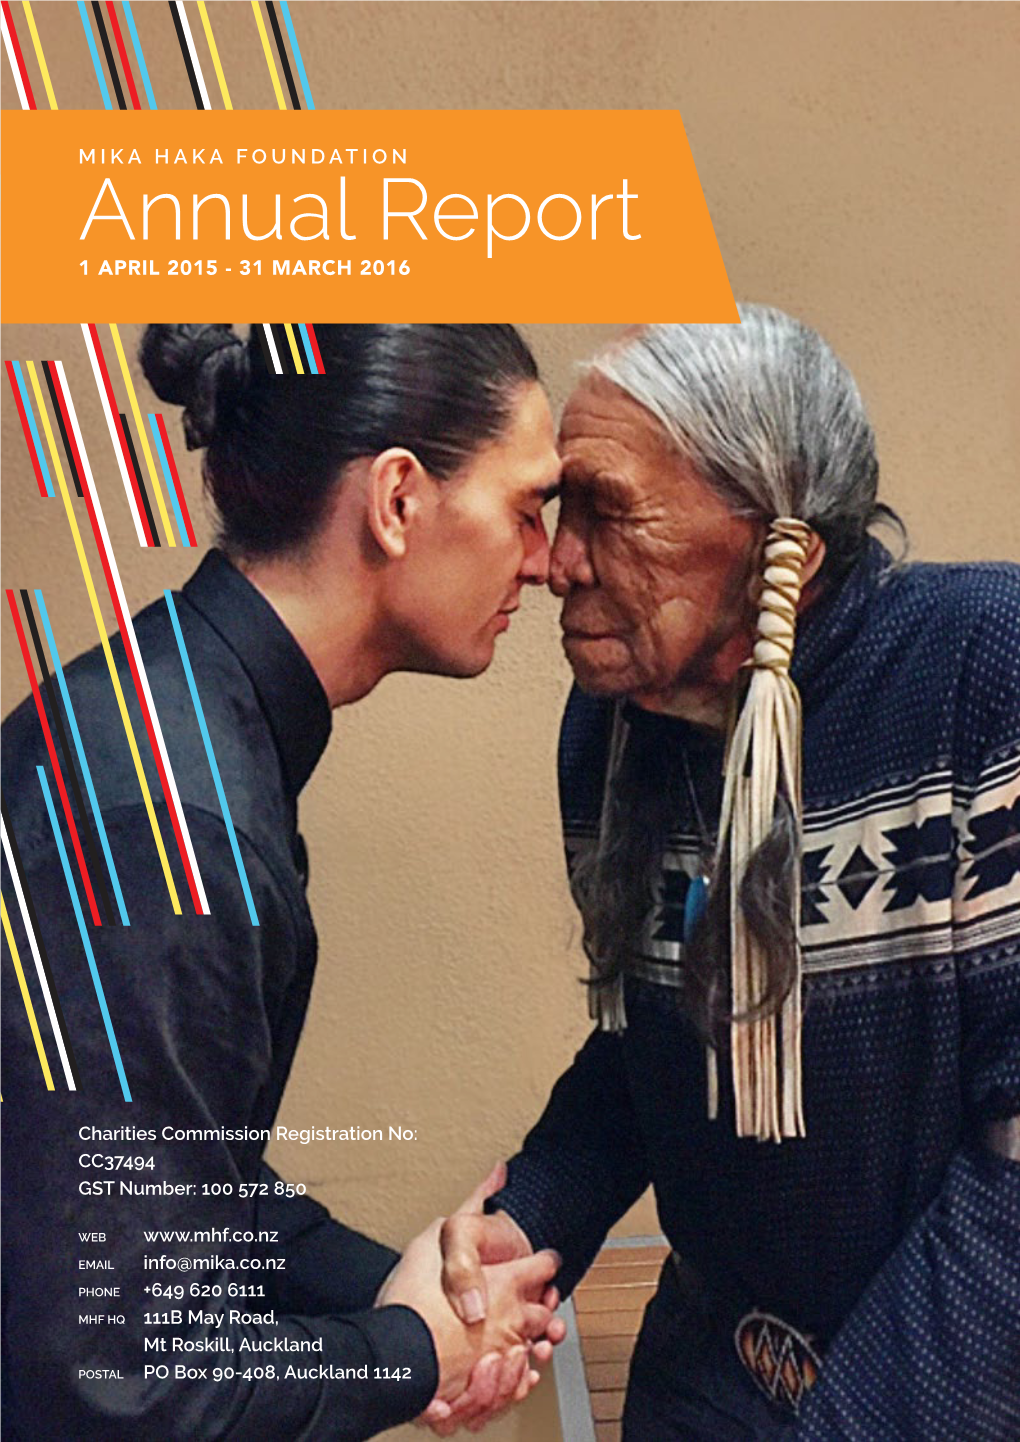 Annual Report 1 APRIL 2015 - 31 MARCH 2016